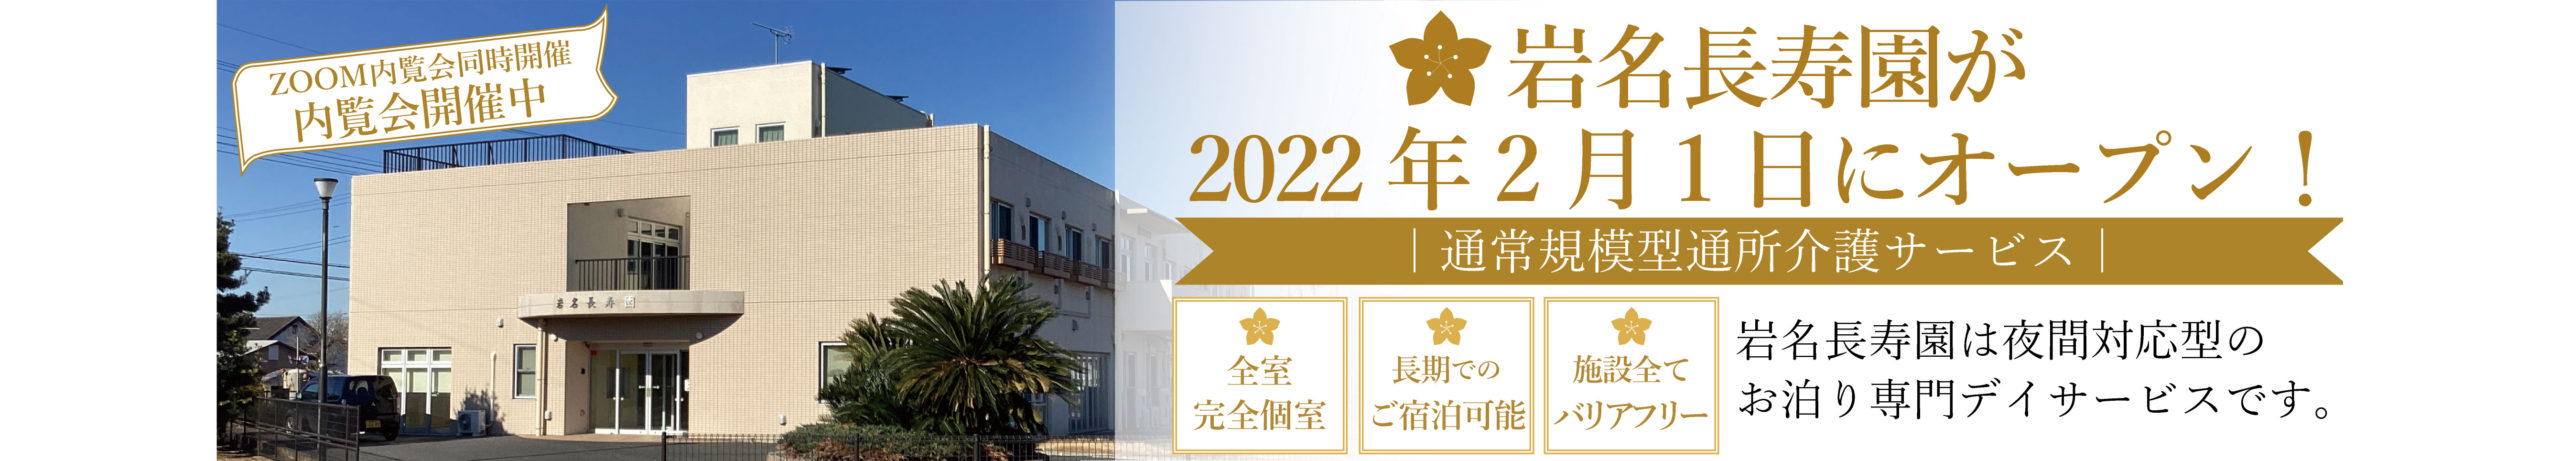 お泊り専門デイサービスの岩名長寿園が2022年2月1日にオープンしました。